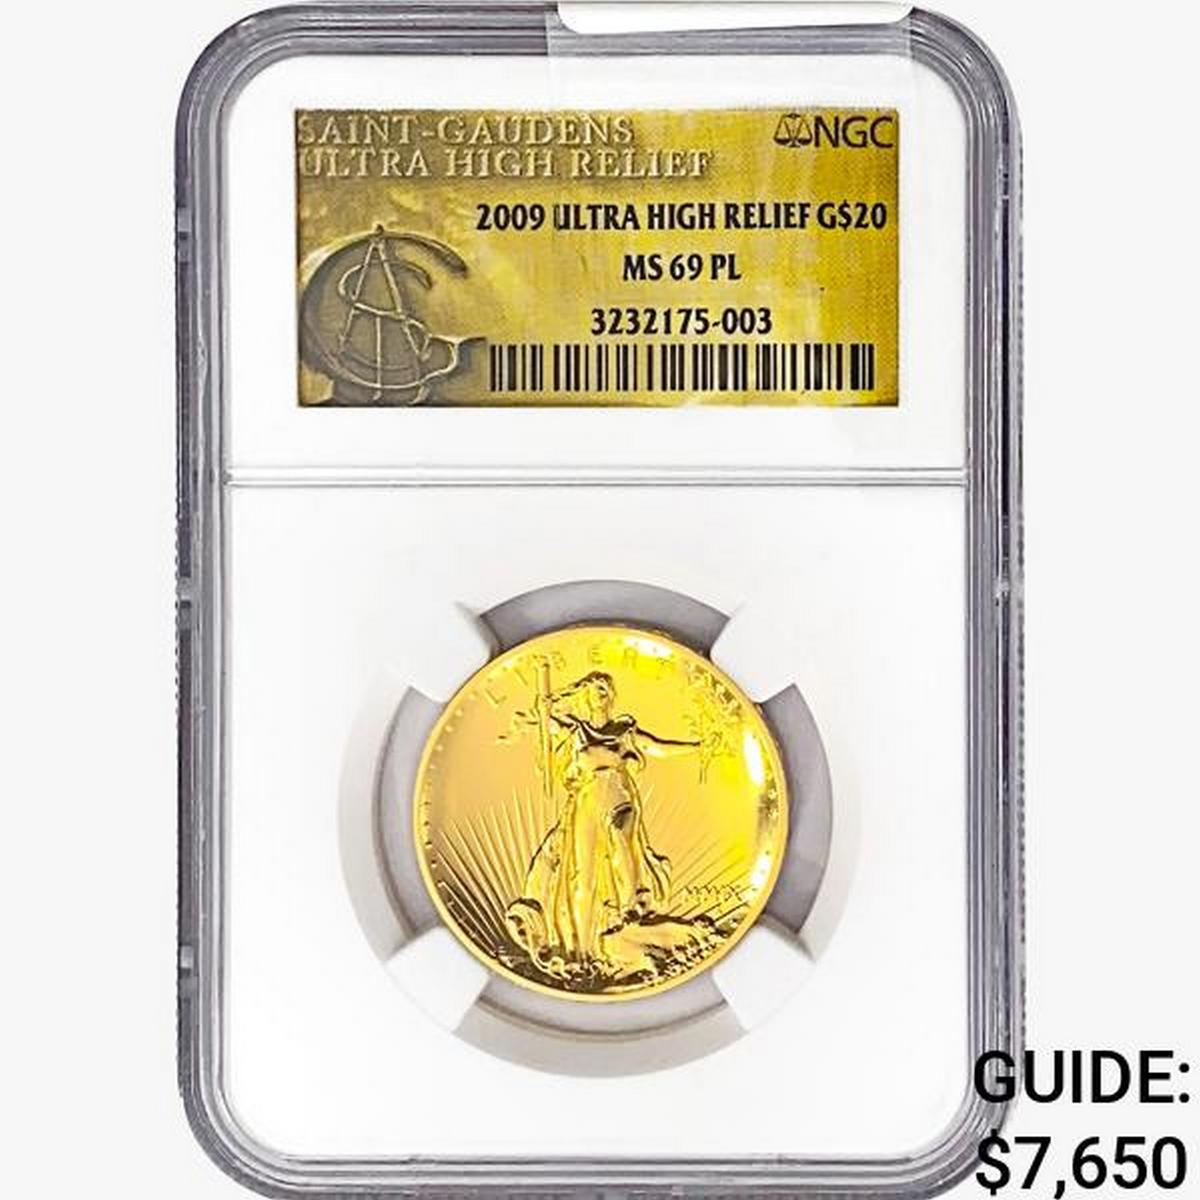 2009 1oz. Gold $20 St. Gaudens NGC MS69 PL UHR